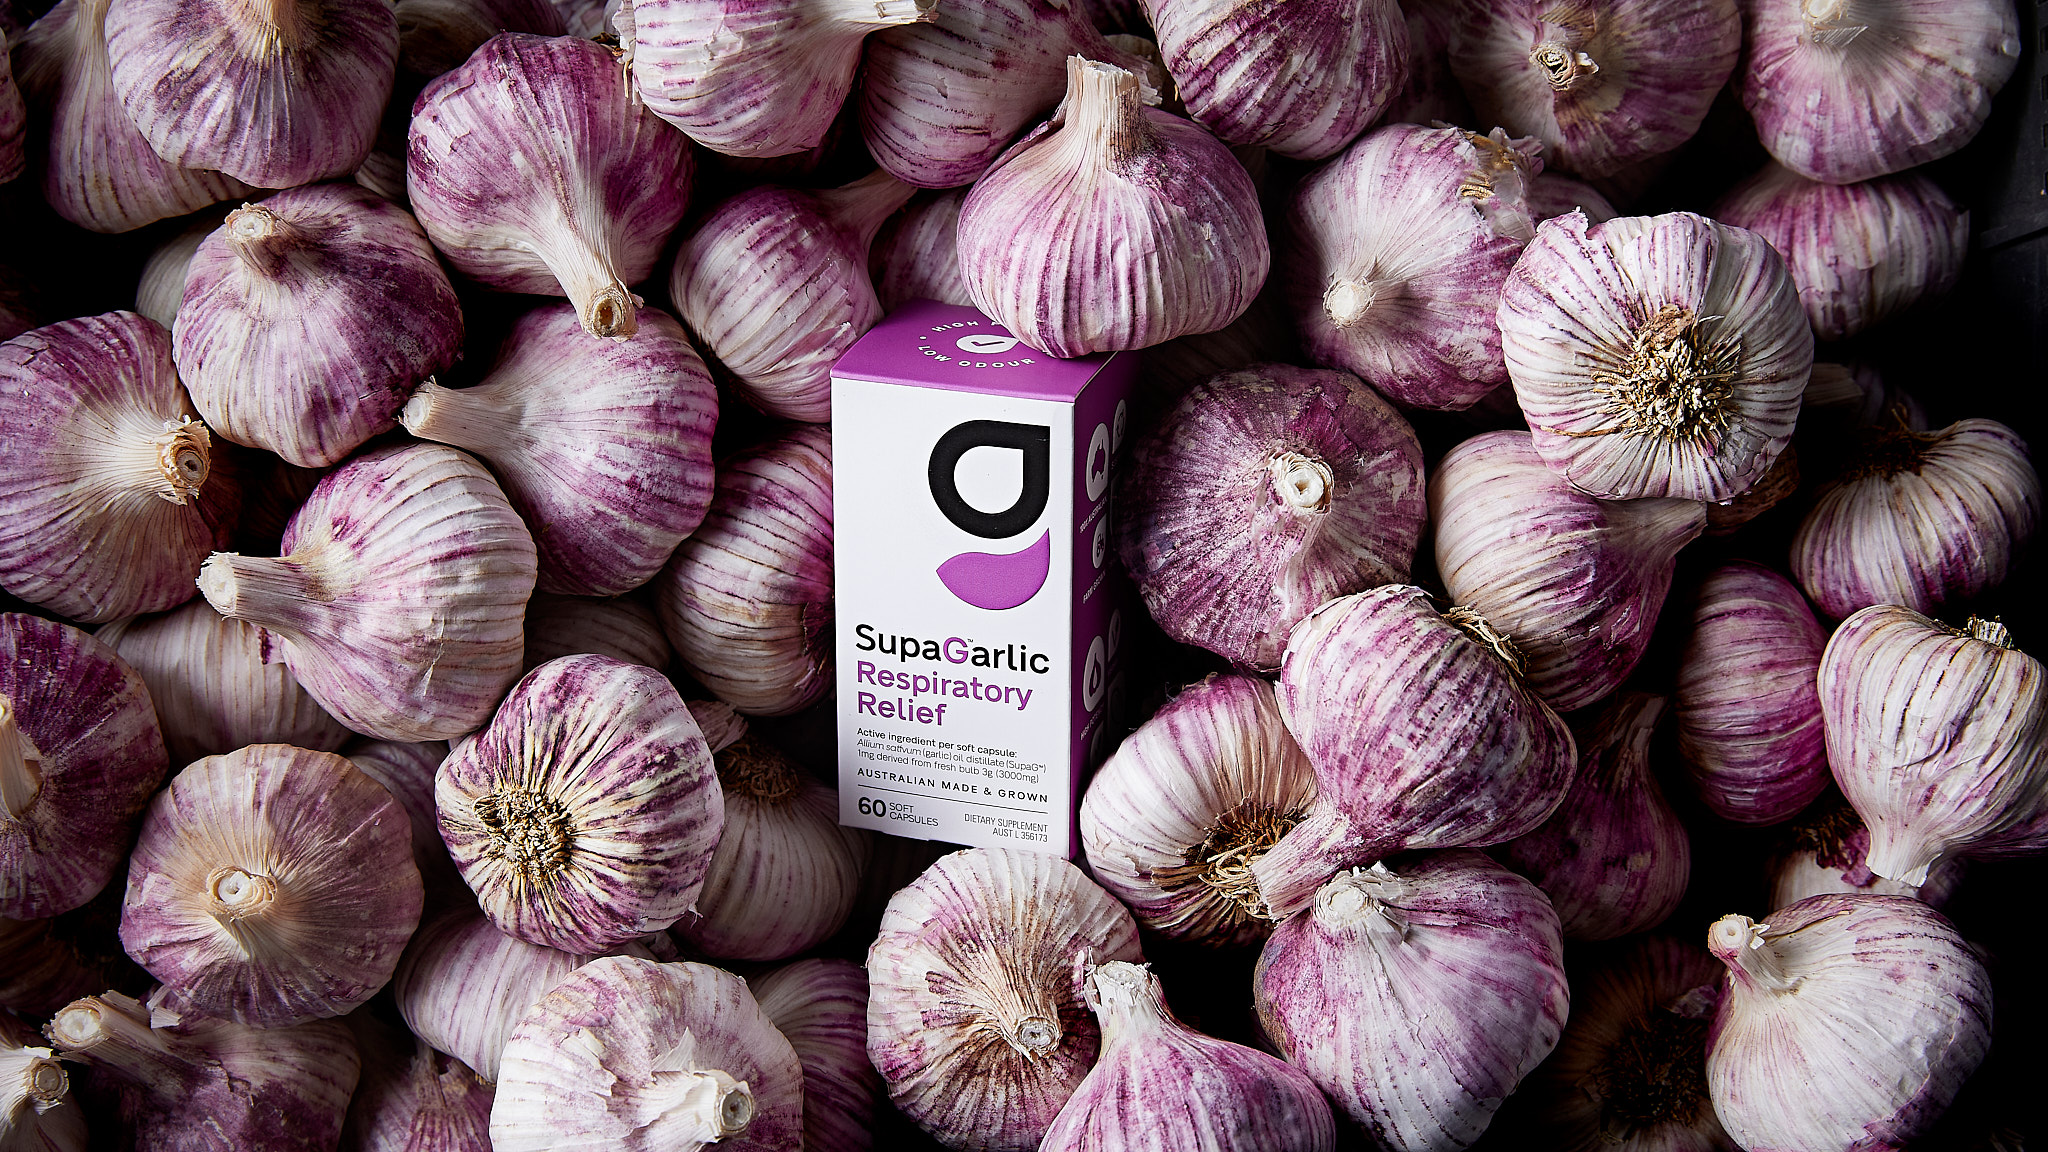 SupaG Garlic Pack Garlic Nest respiratory